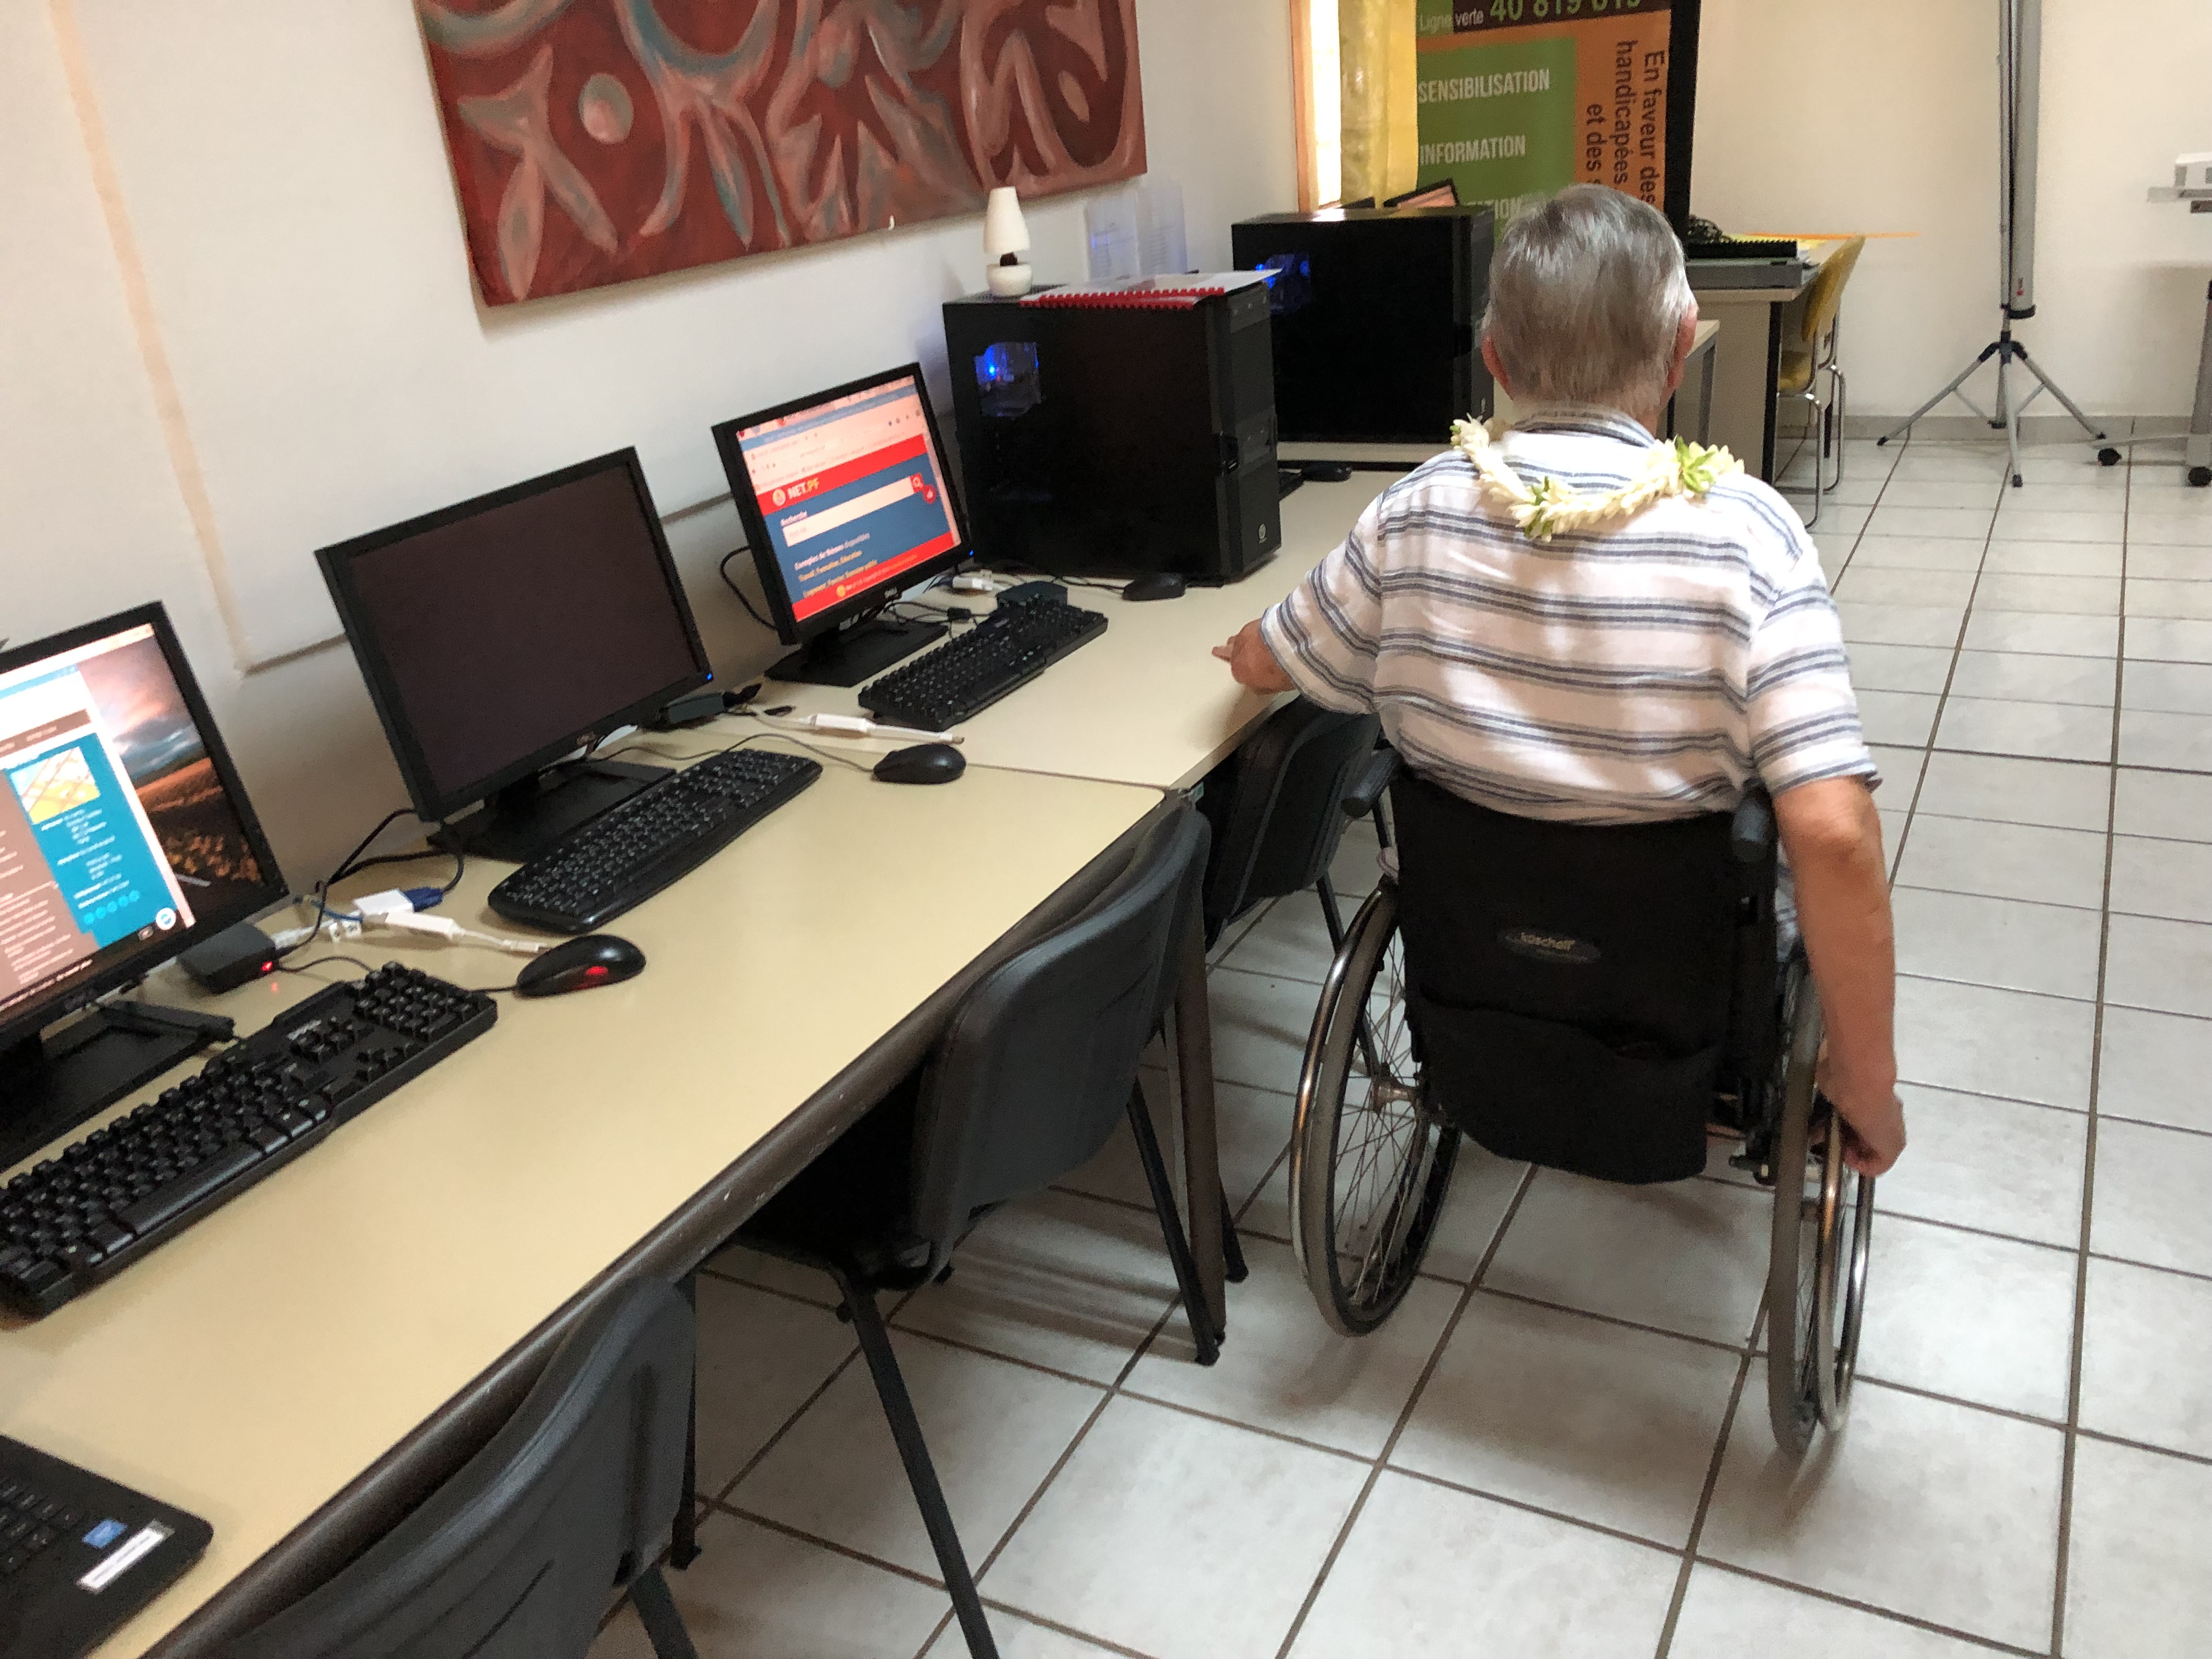 Te Niu o te Huma s'engage pour l'inclusion numérique des personnes handicapées